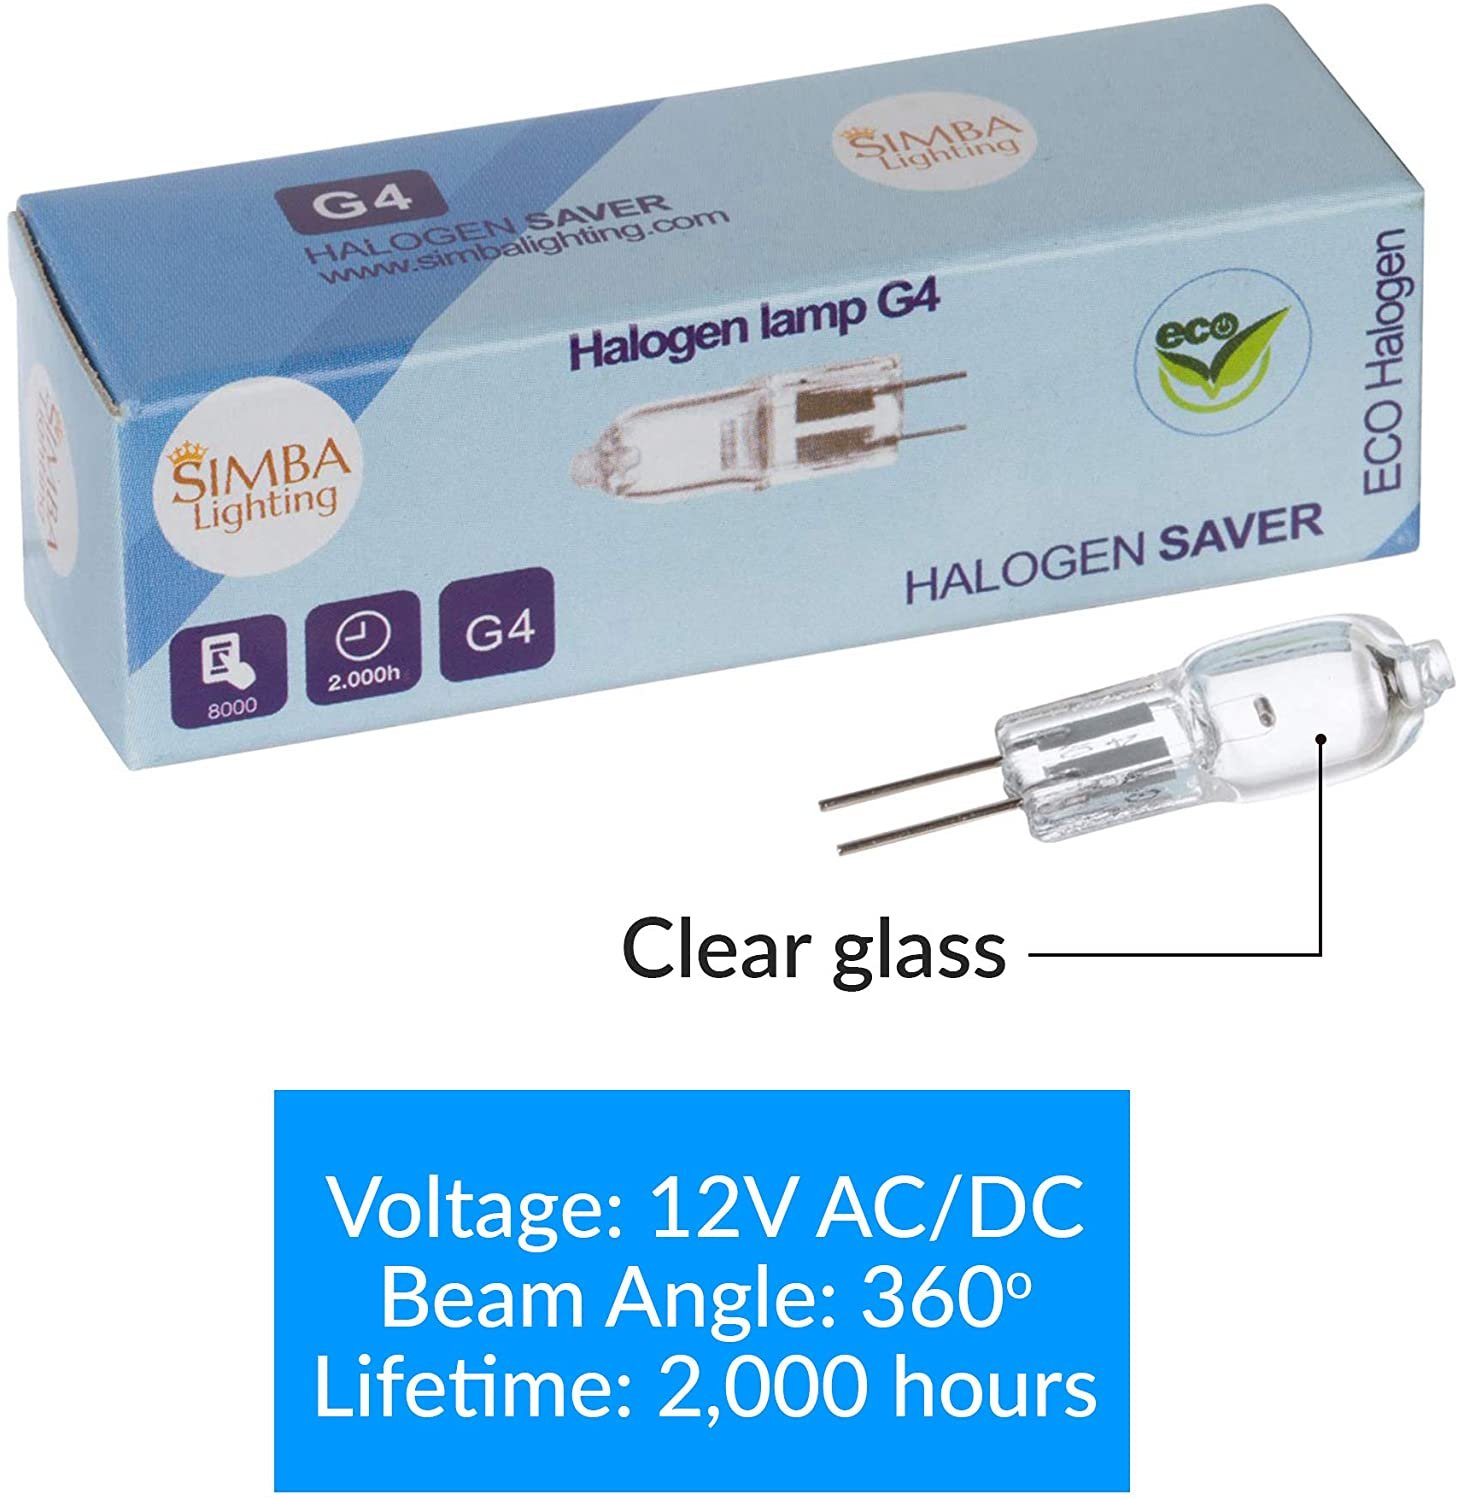 Simba Lighting® Halogen G4 T3 20W 280lm Bi-Pin Bulbs 12V JC 2700K Warm White ,10-Pack